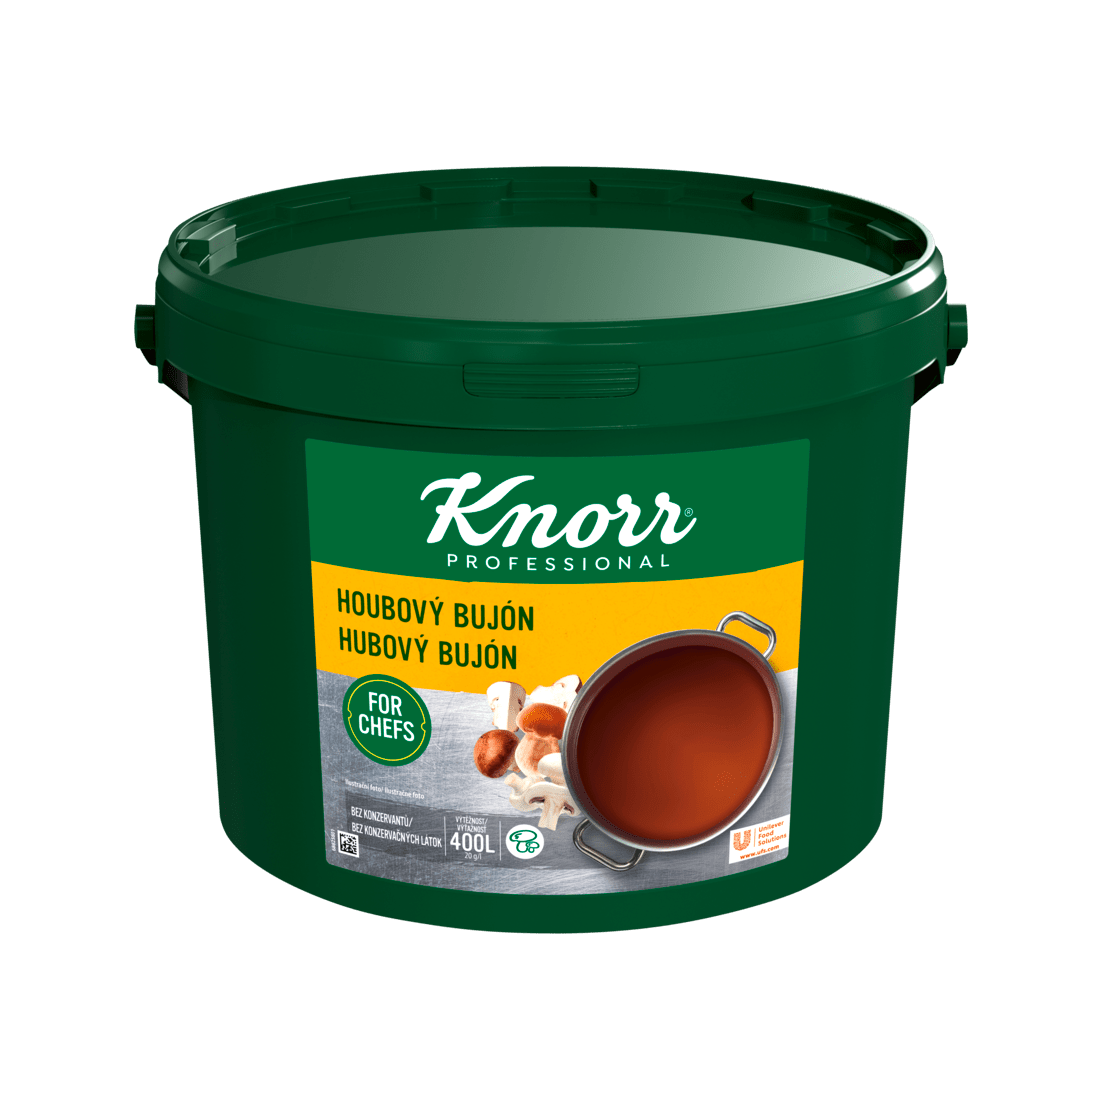 KNORR Professional Hubový bujón 8 kg - 